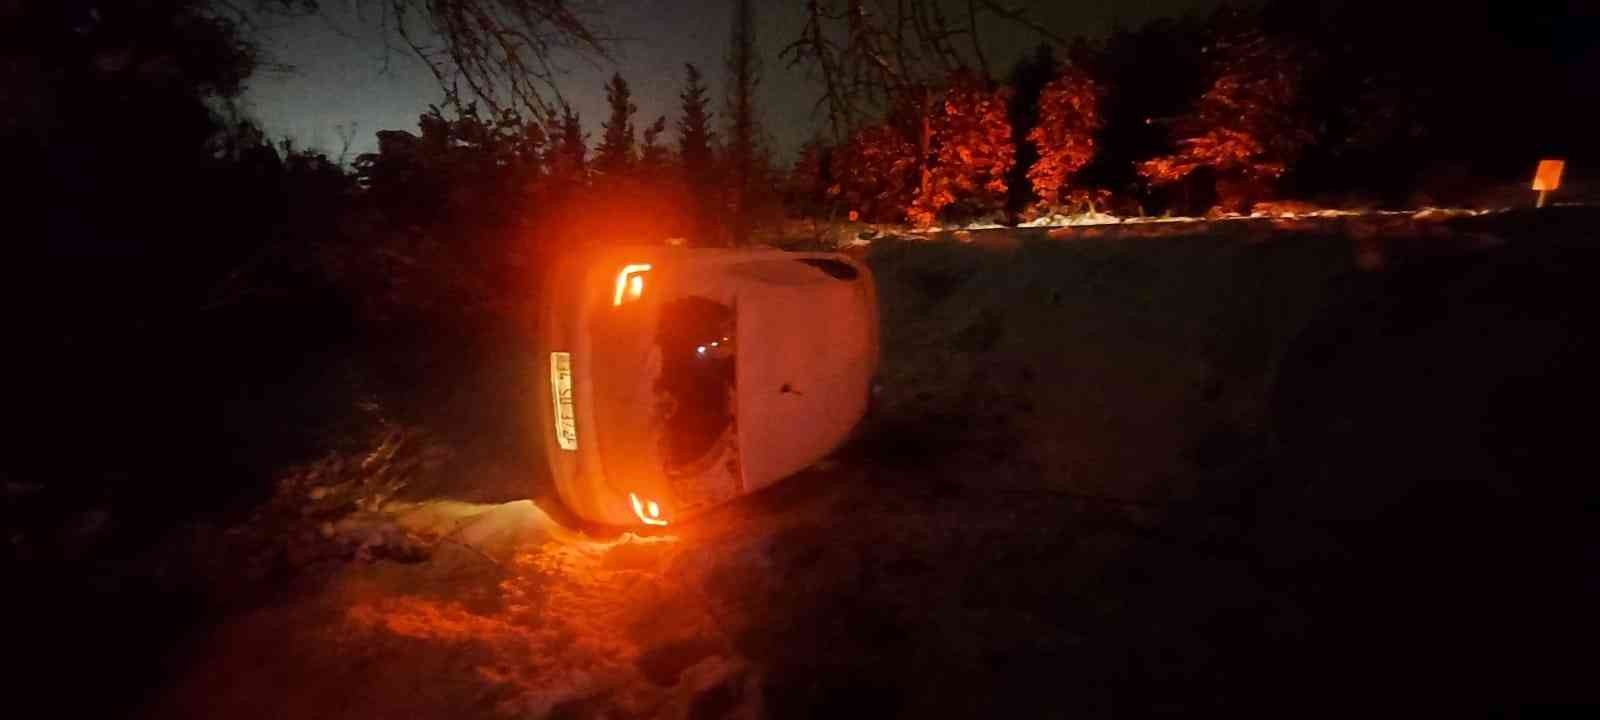 Kocaeli’nin Gebze ilçesinde kar yağışı sonrasında kayganlaşan yolda kontrolü kaybeden sürücü otomobiliyle takla attı. Kazada 4 kişi yaralandı ...